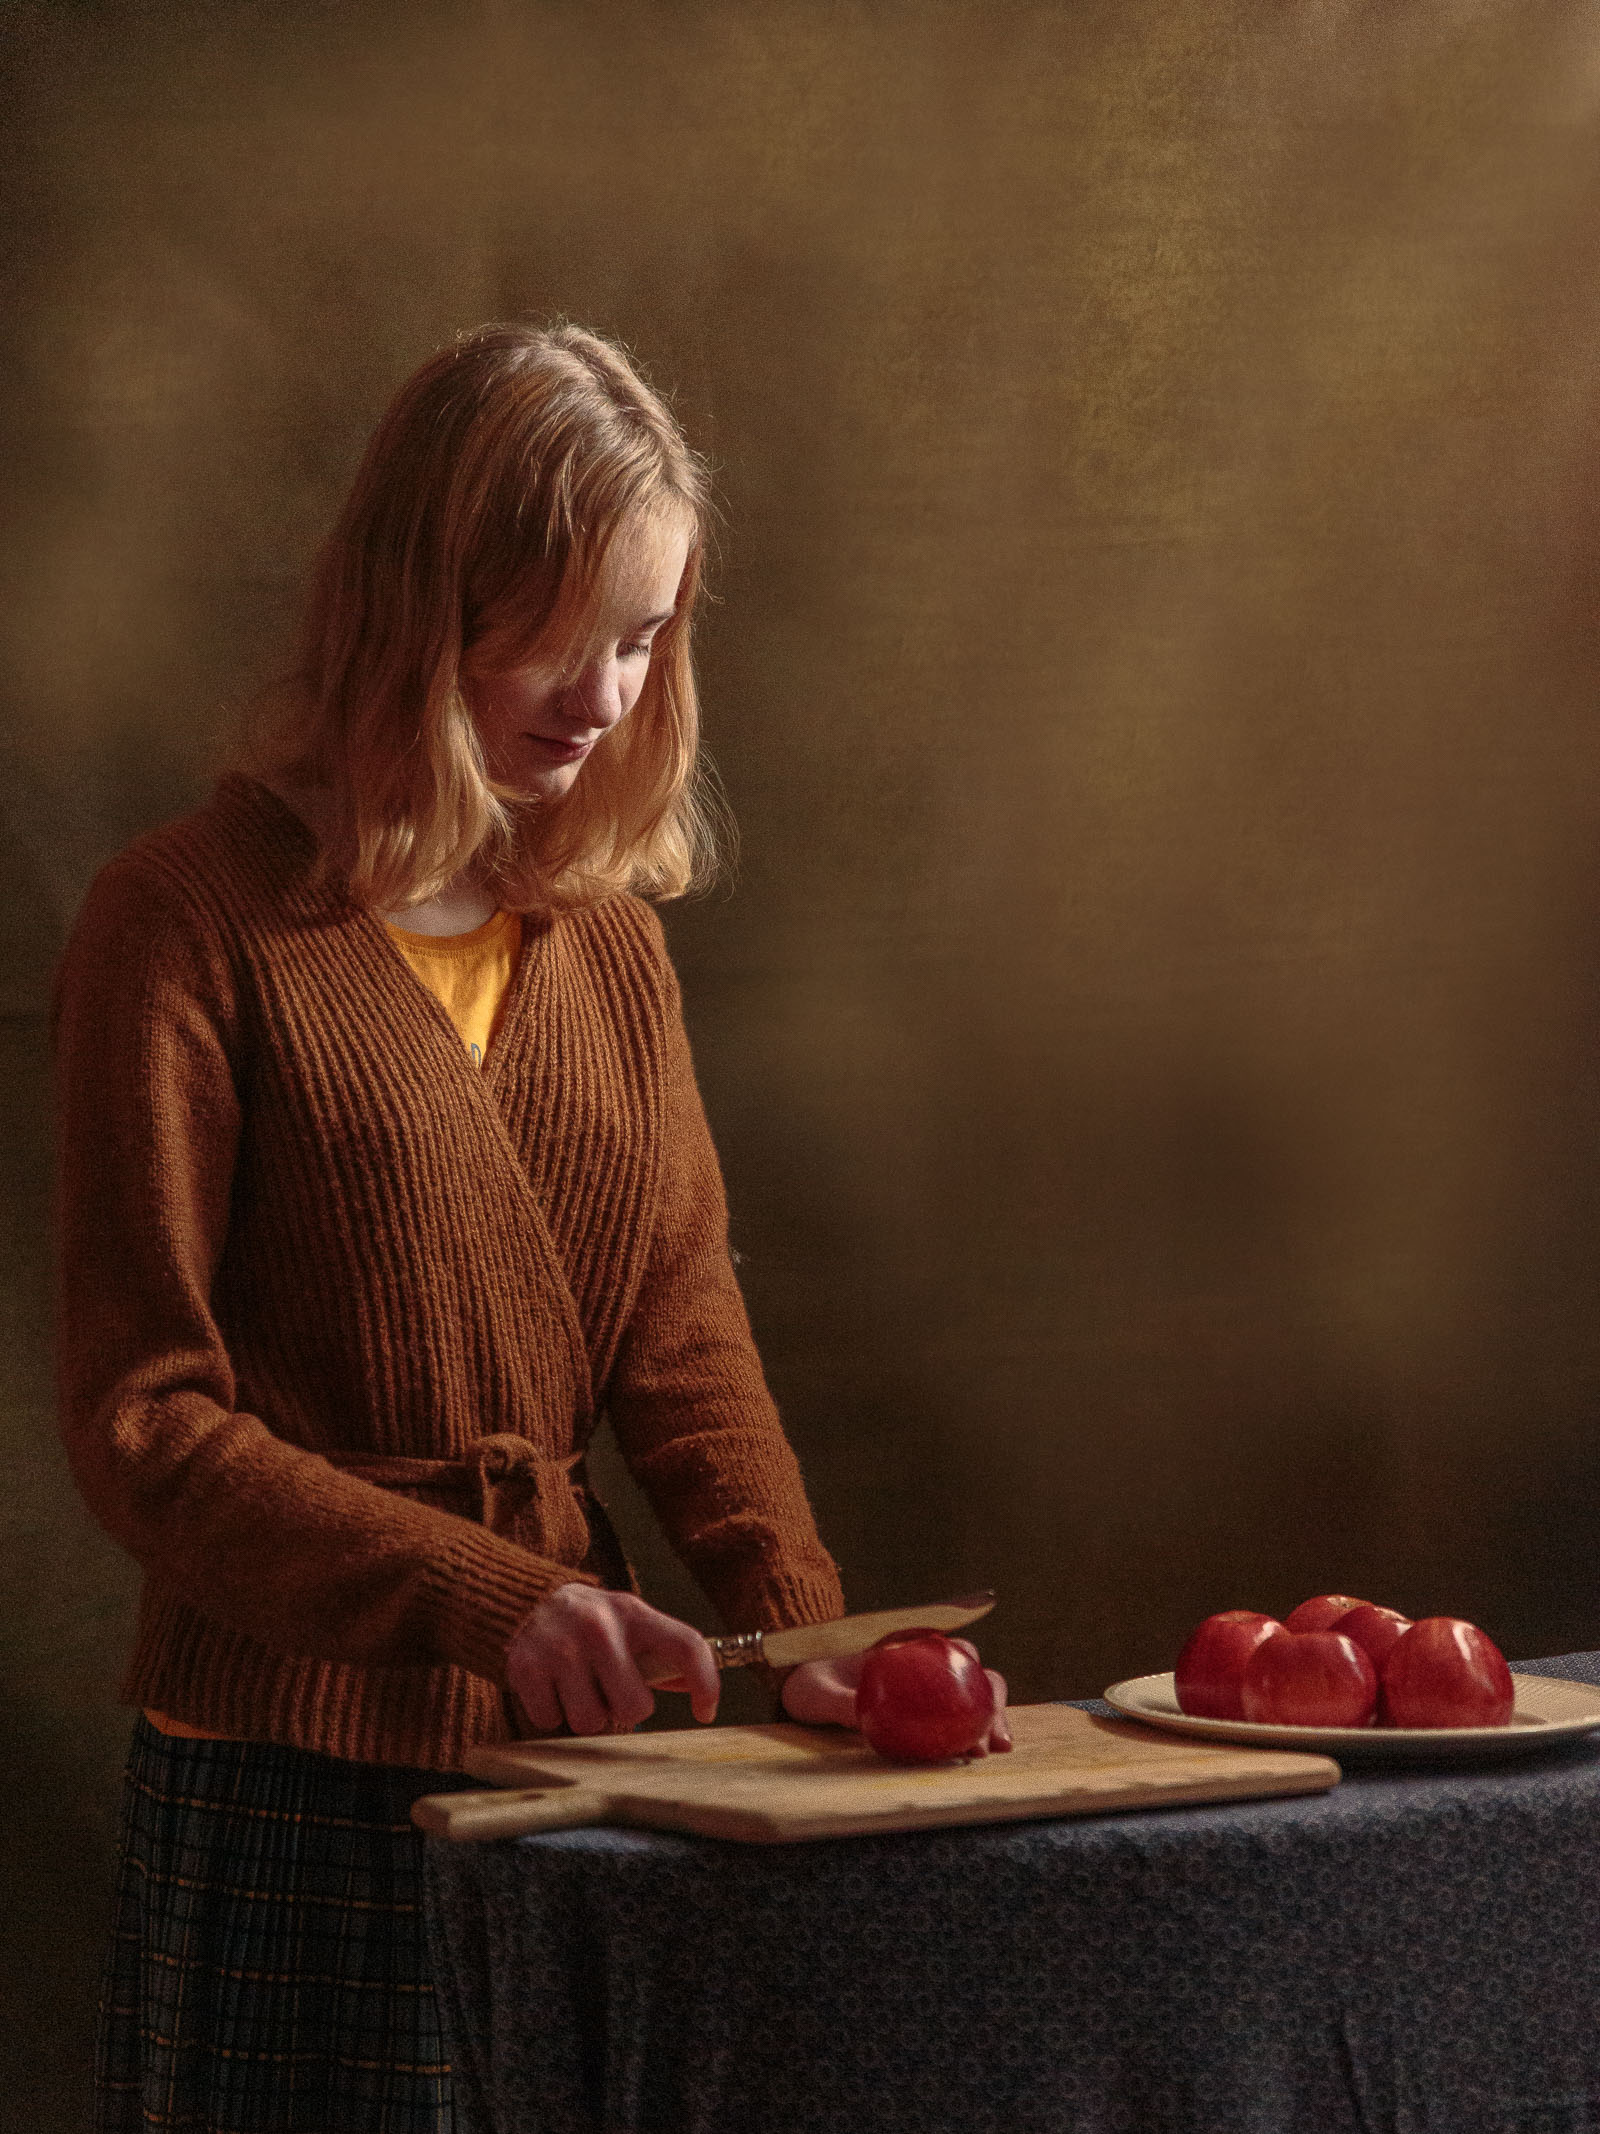 Meisje snijdt appels